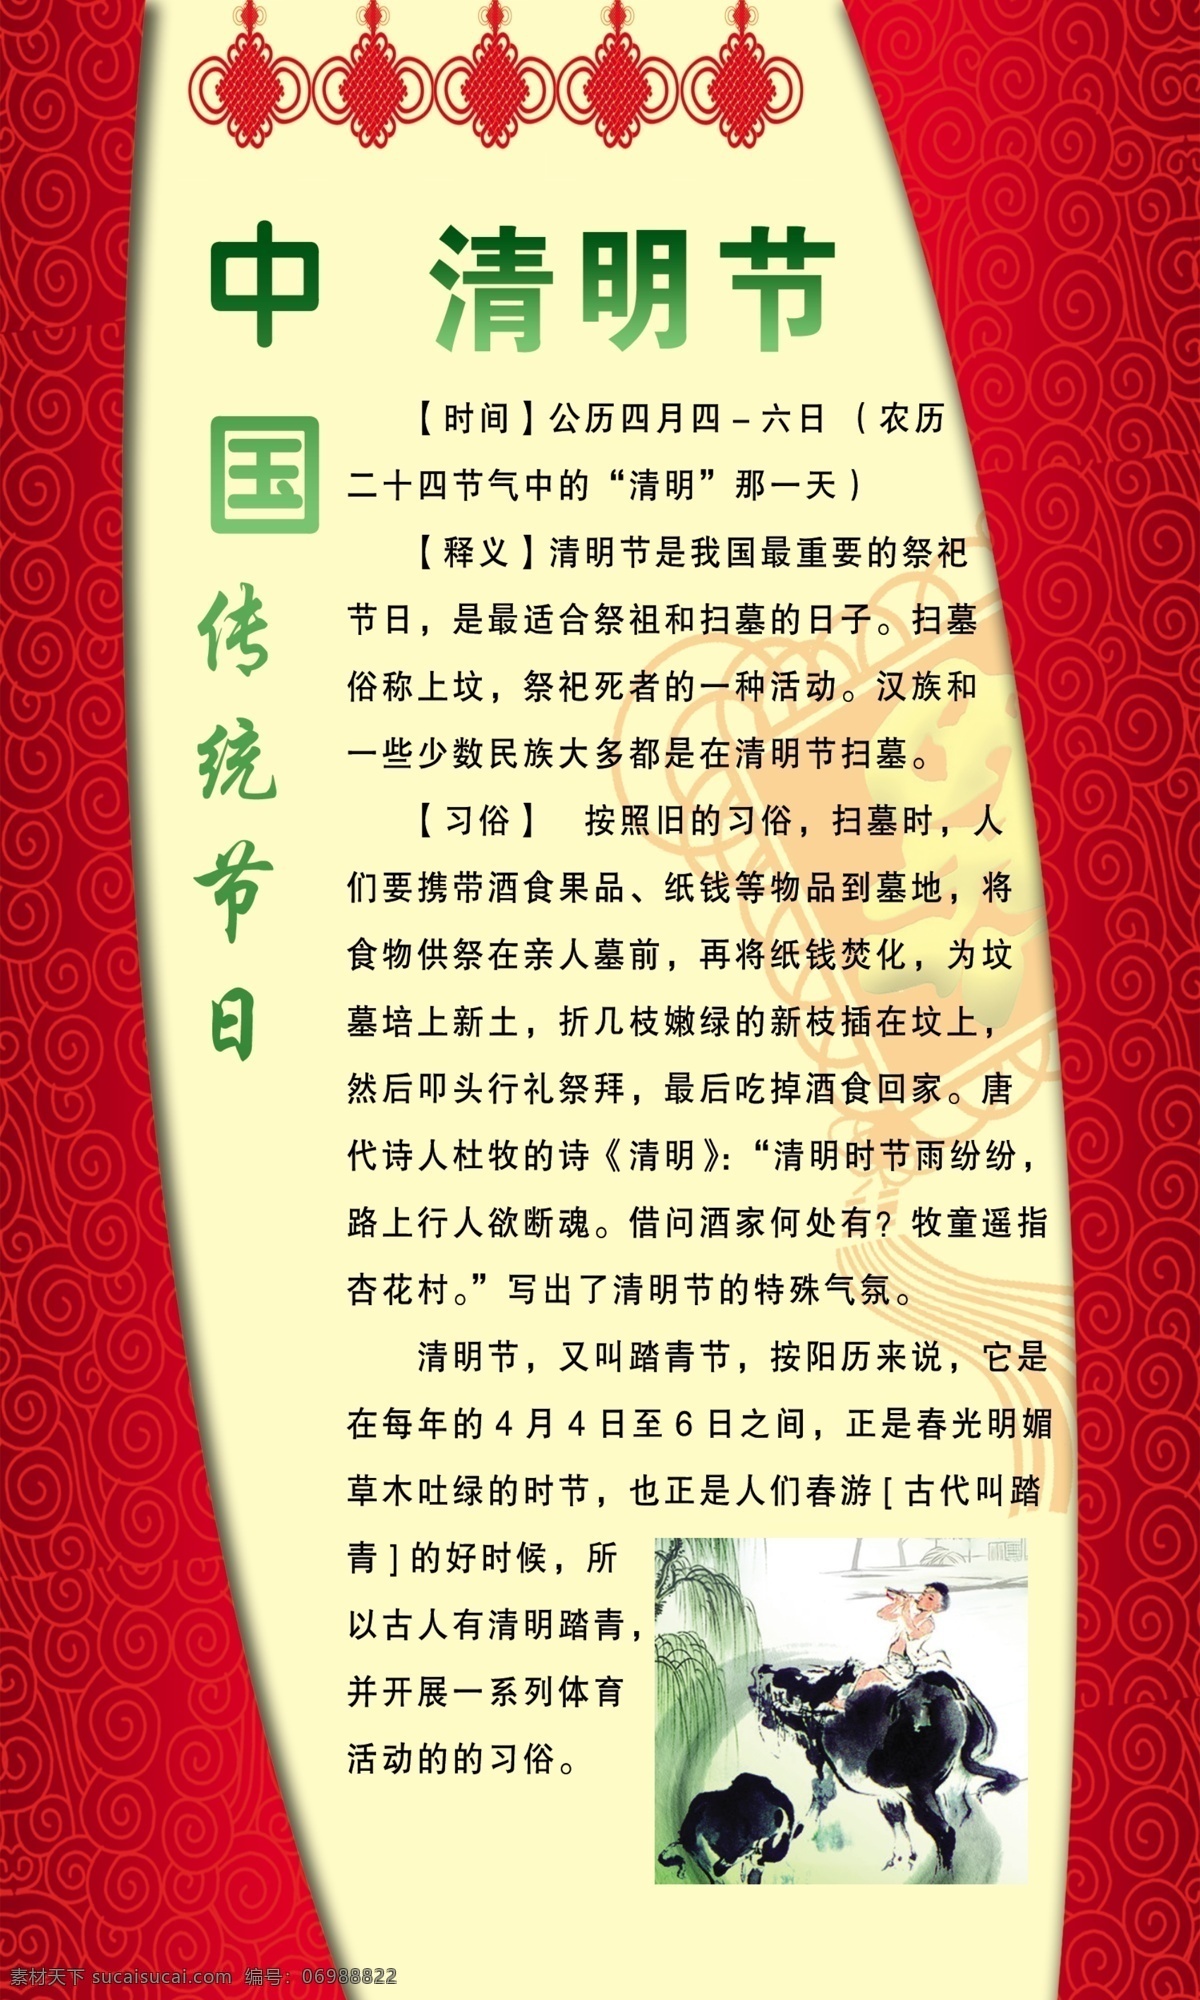 中国传统节日 清明节 传统节日 校园文化 底纹 中国结 展板模板 广告设计模板 源文件